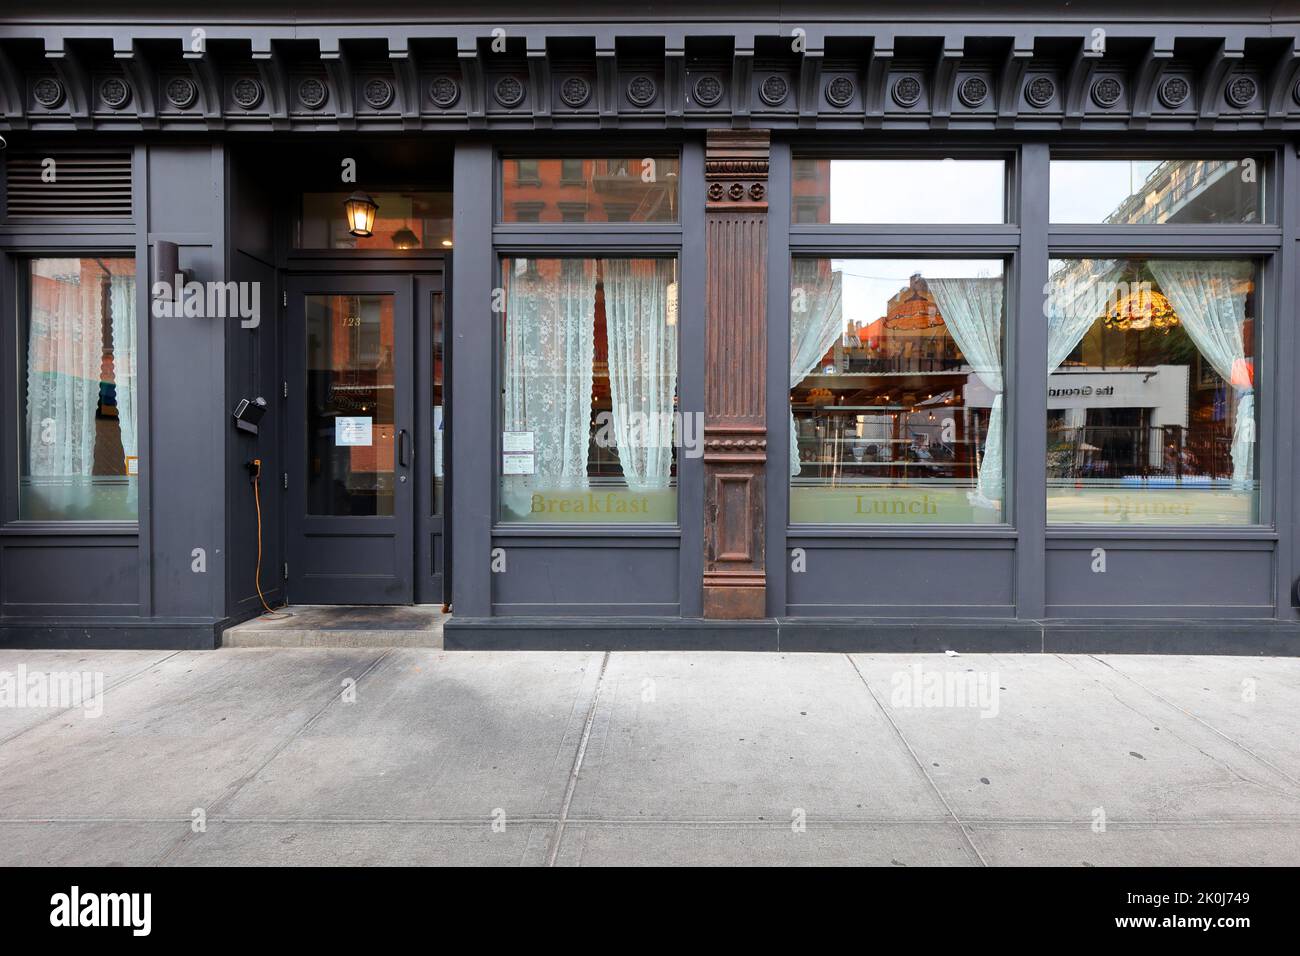 Golden Diner, 123 Madison St, Nueva York, foto del escaparate de un restaurante asiático que sirve clásicos americanos actualizados en el barrio chino de Manhattan/Lower East Side Foto de stock